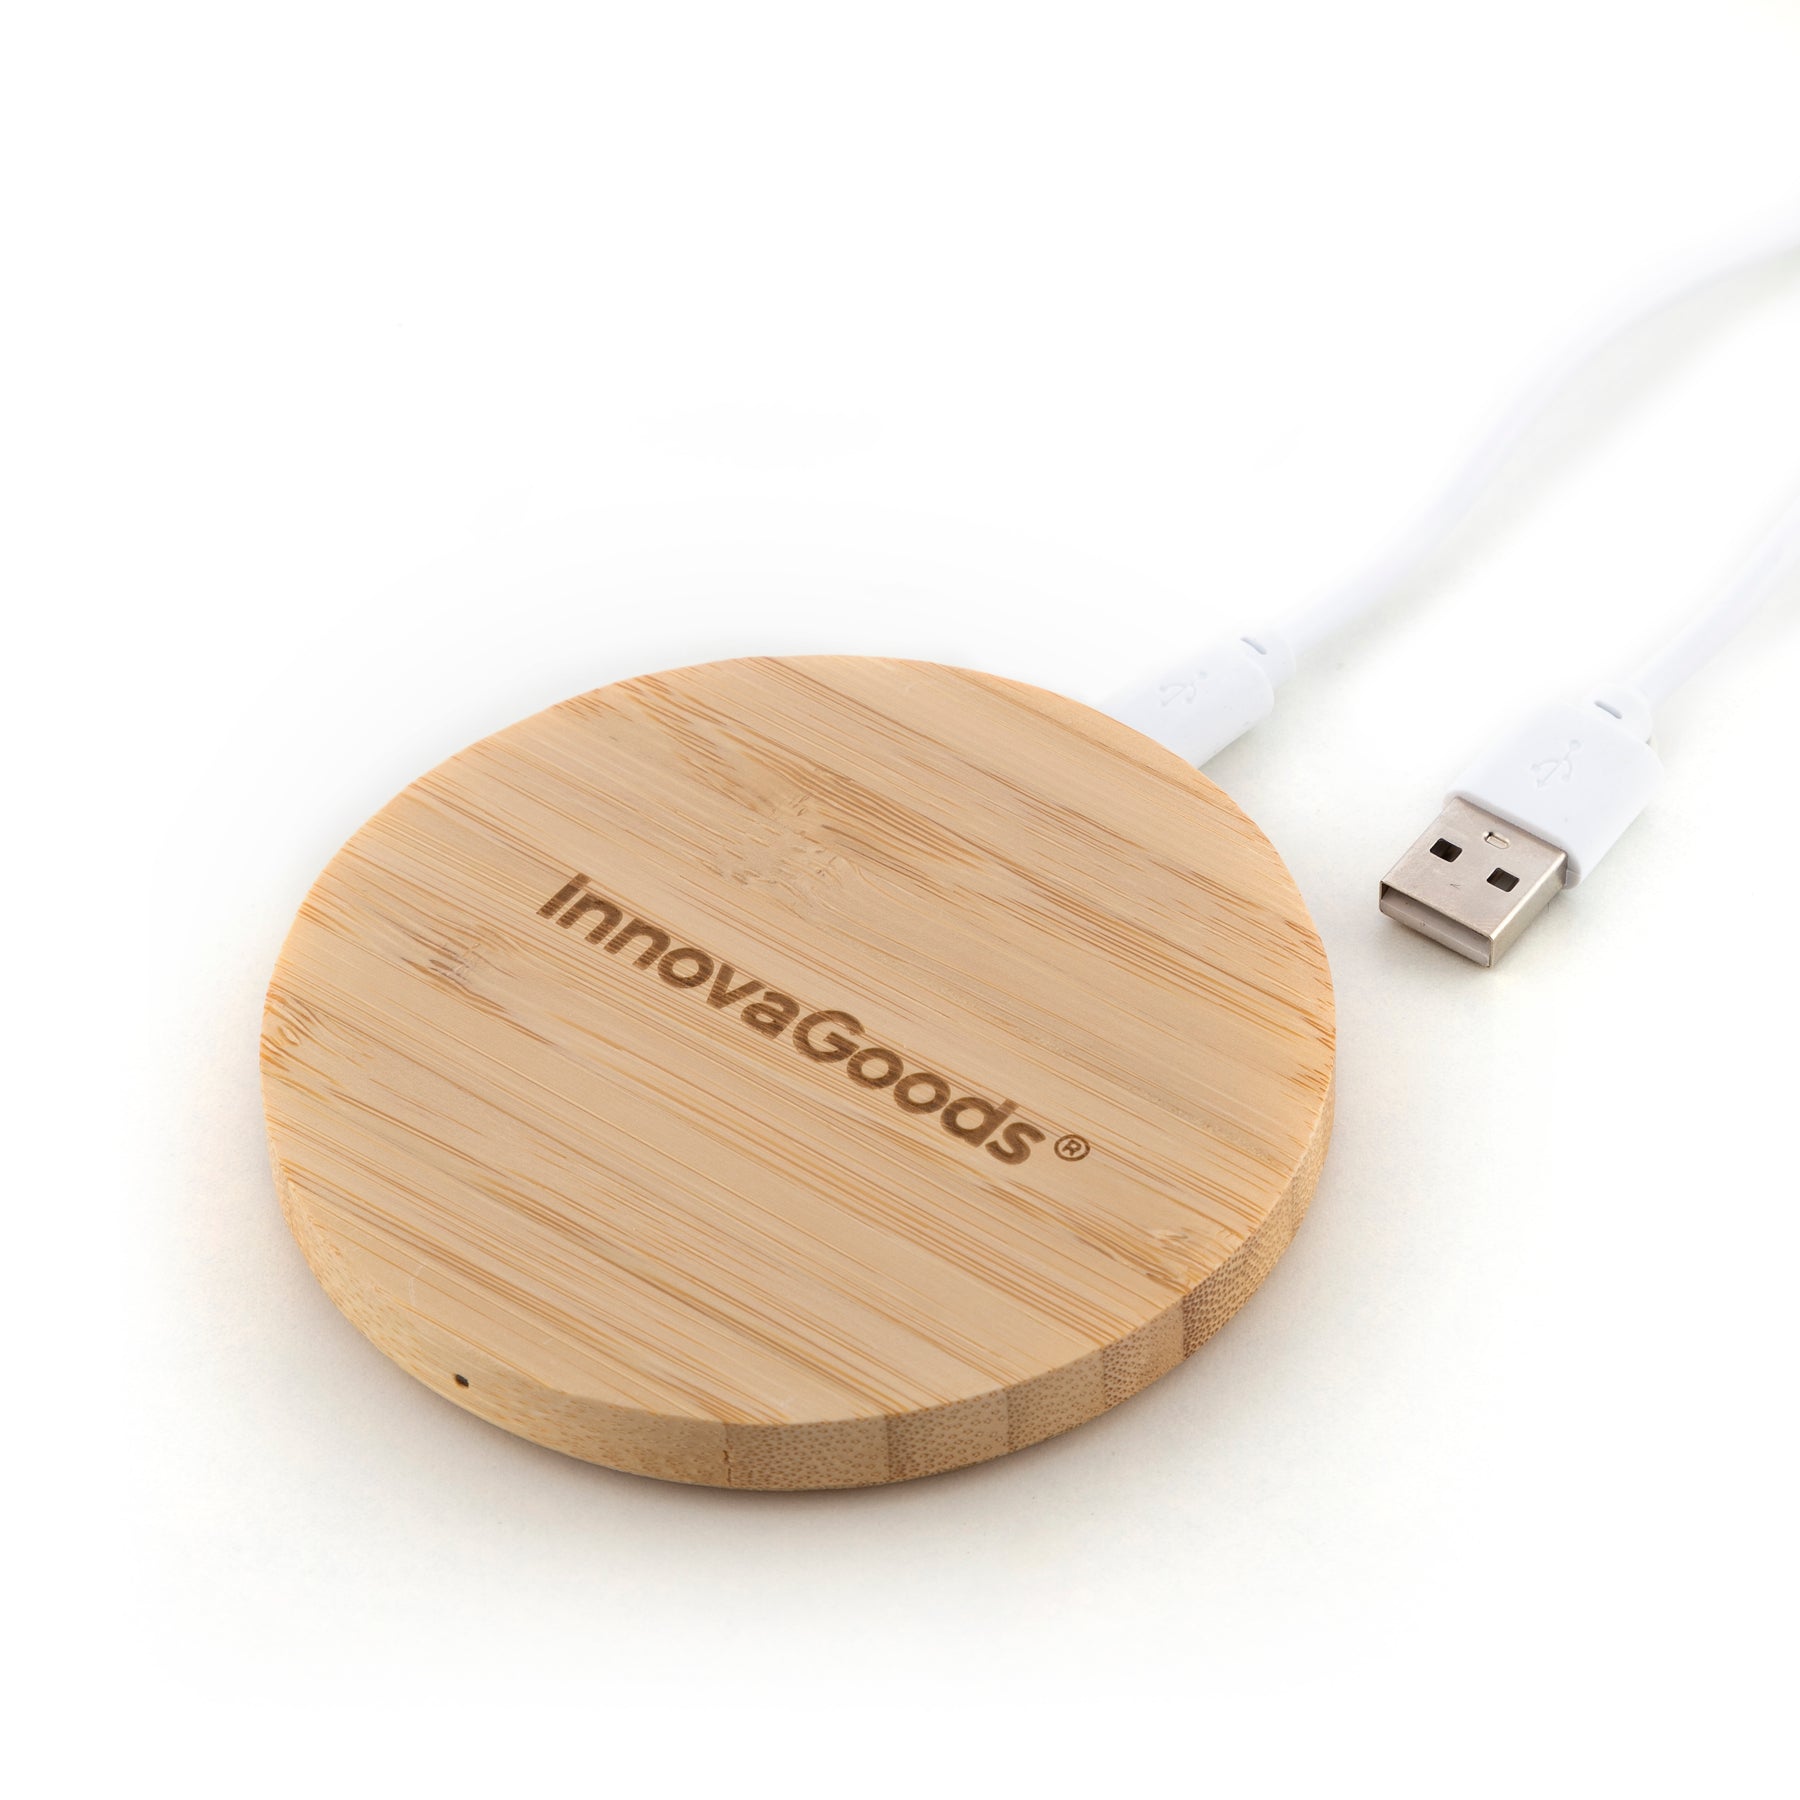 InnovaGoods - Cargador inalámbrico con soporte-organizador y Lámpara LED USB 5 en 1 DesKing